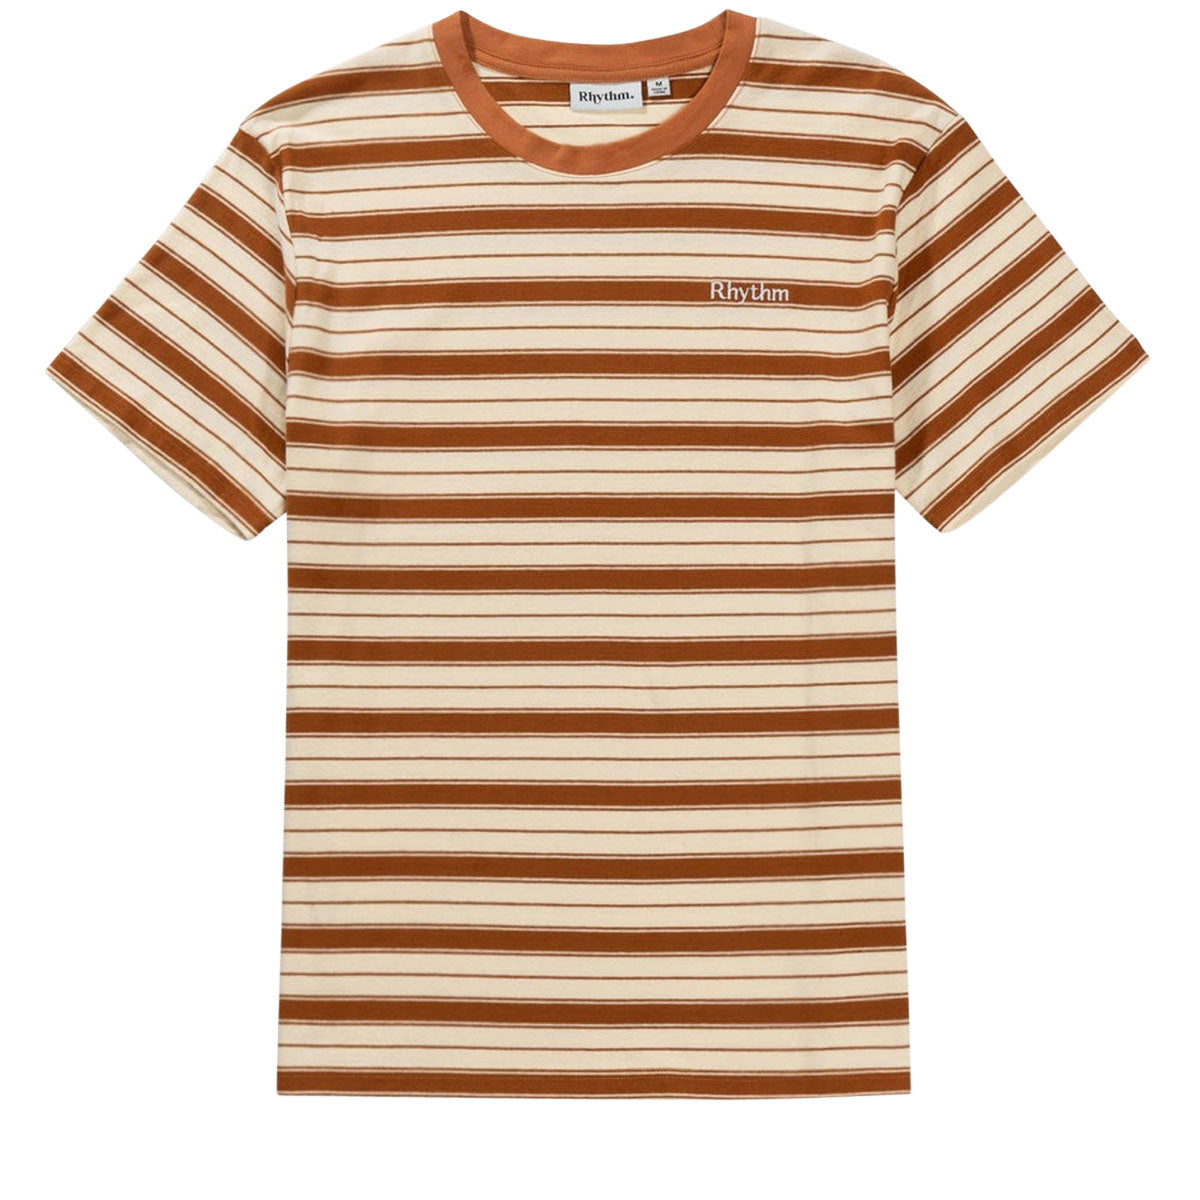 Rhythm Everyday Stripe T-Shirt - Cedar image 1